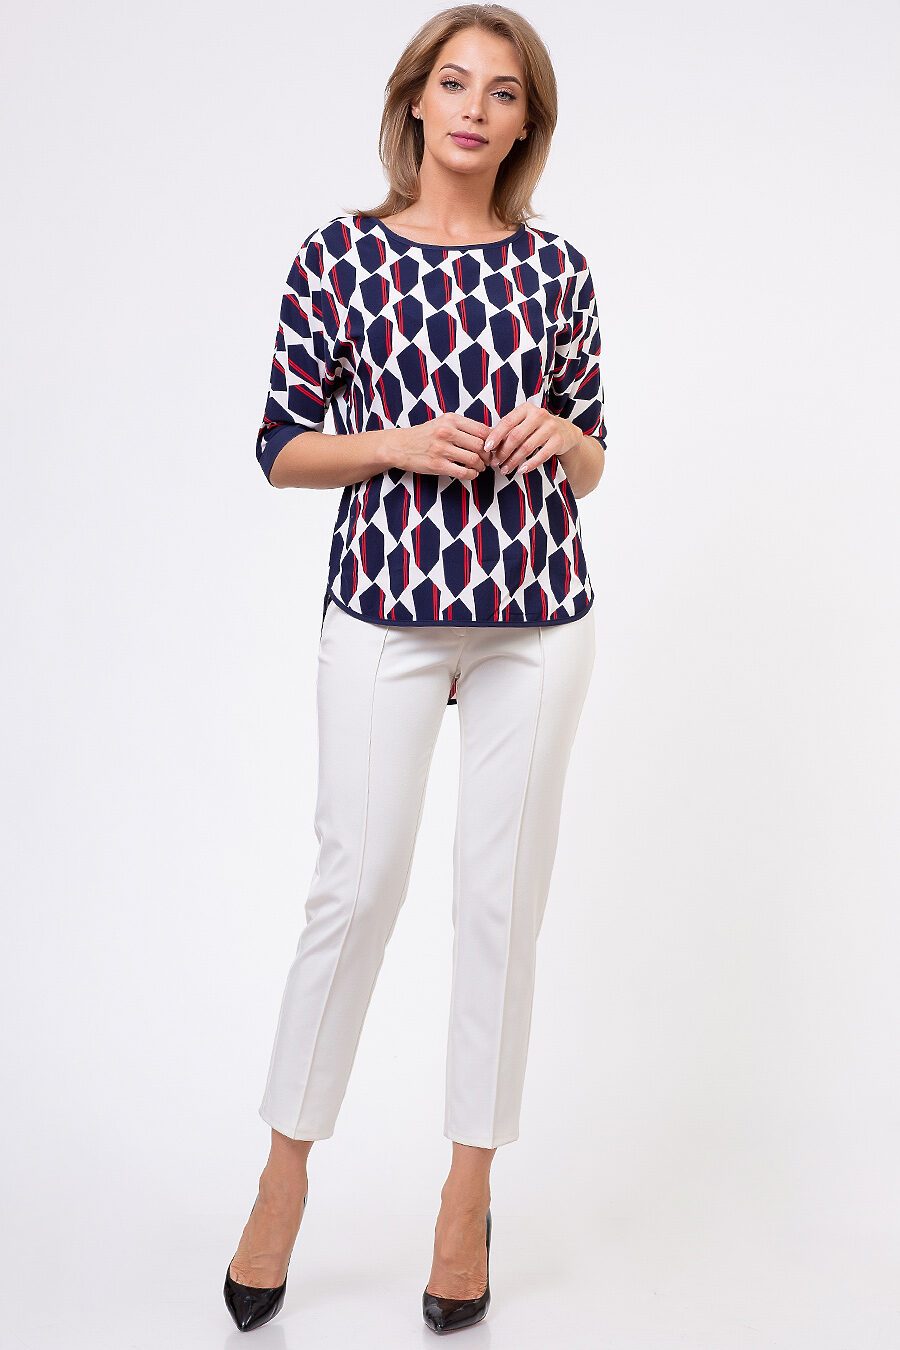 Блуза TUTACHI (127300), купить в Moyo.moda